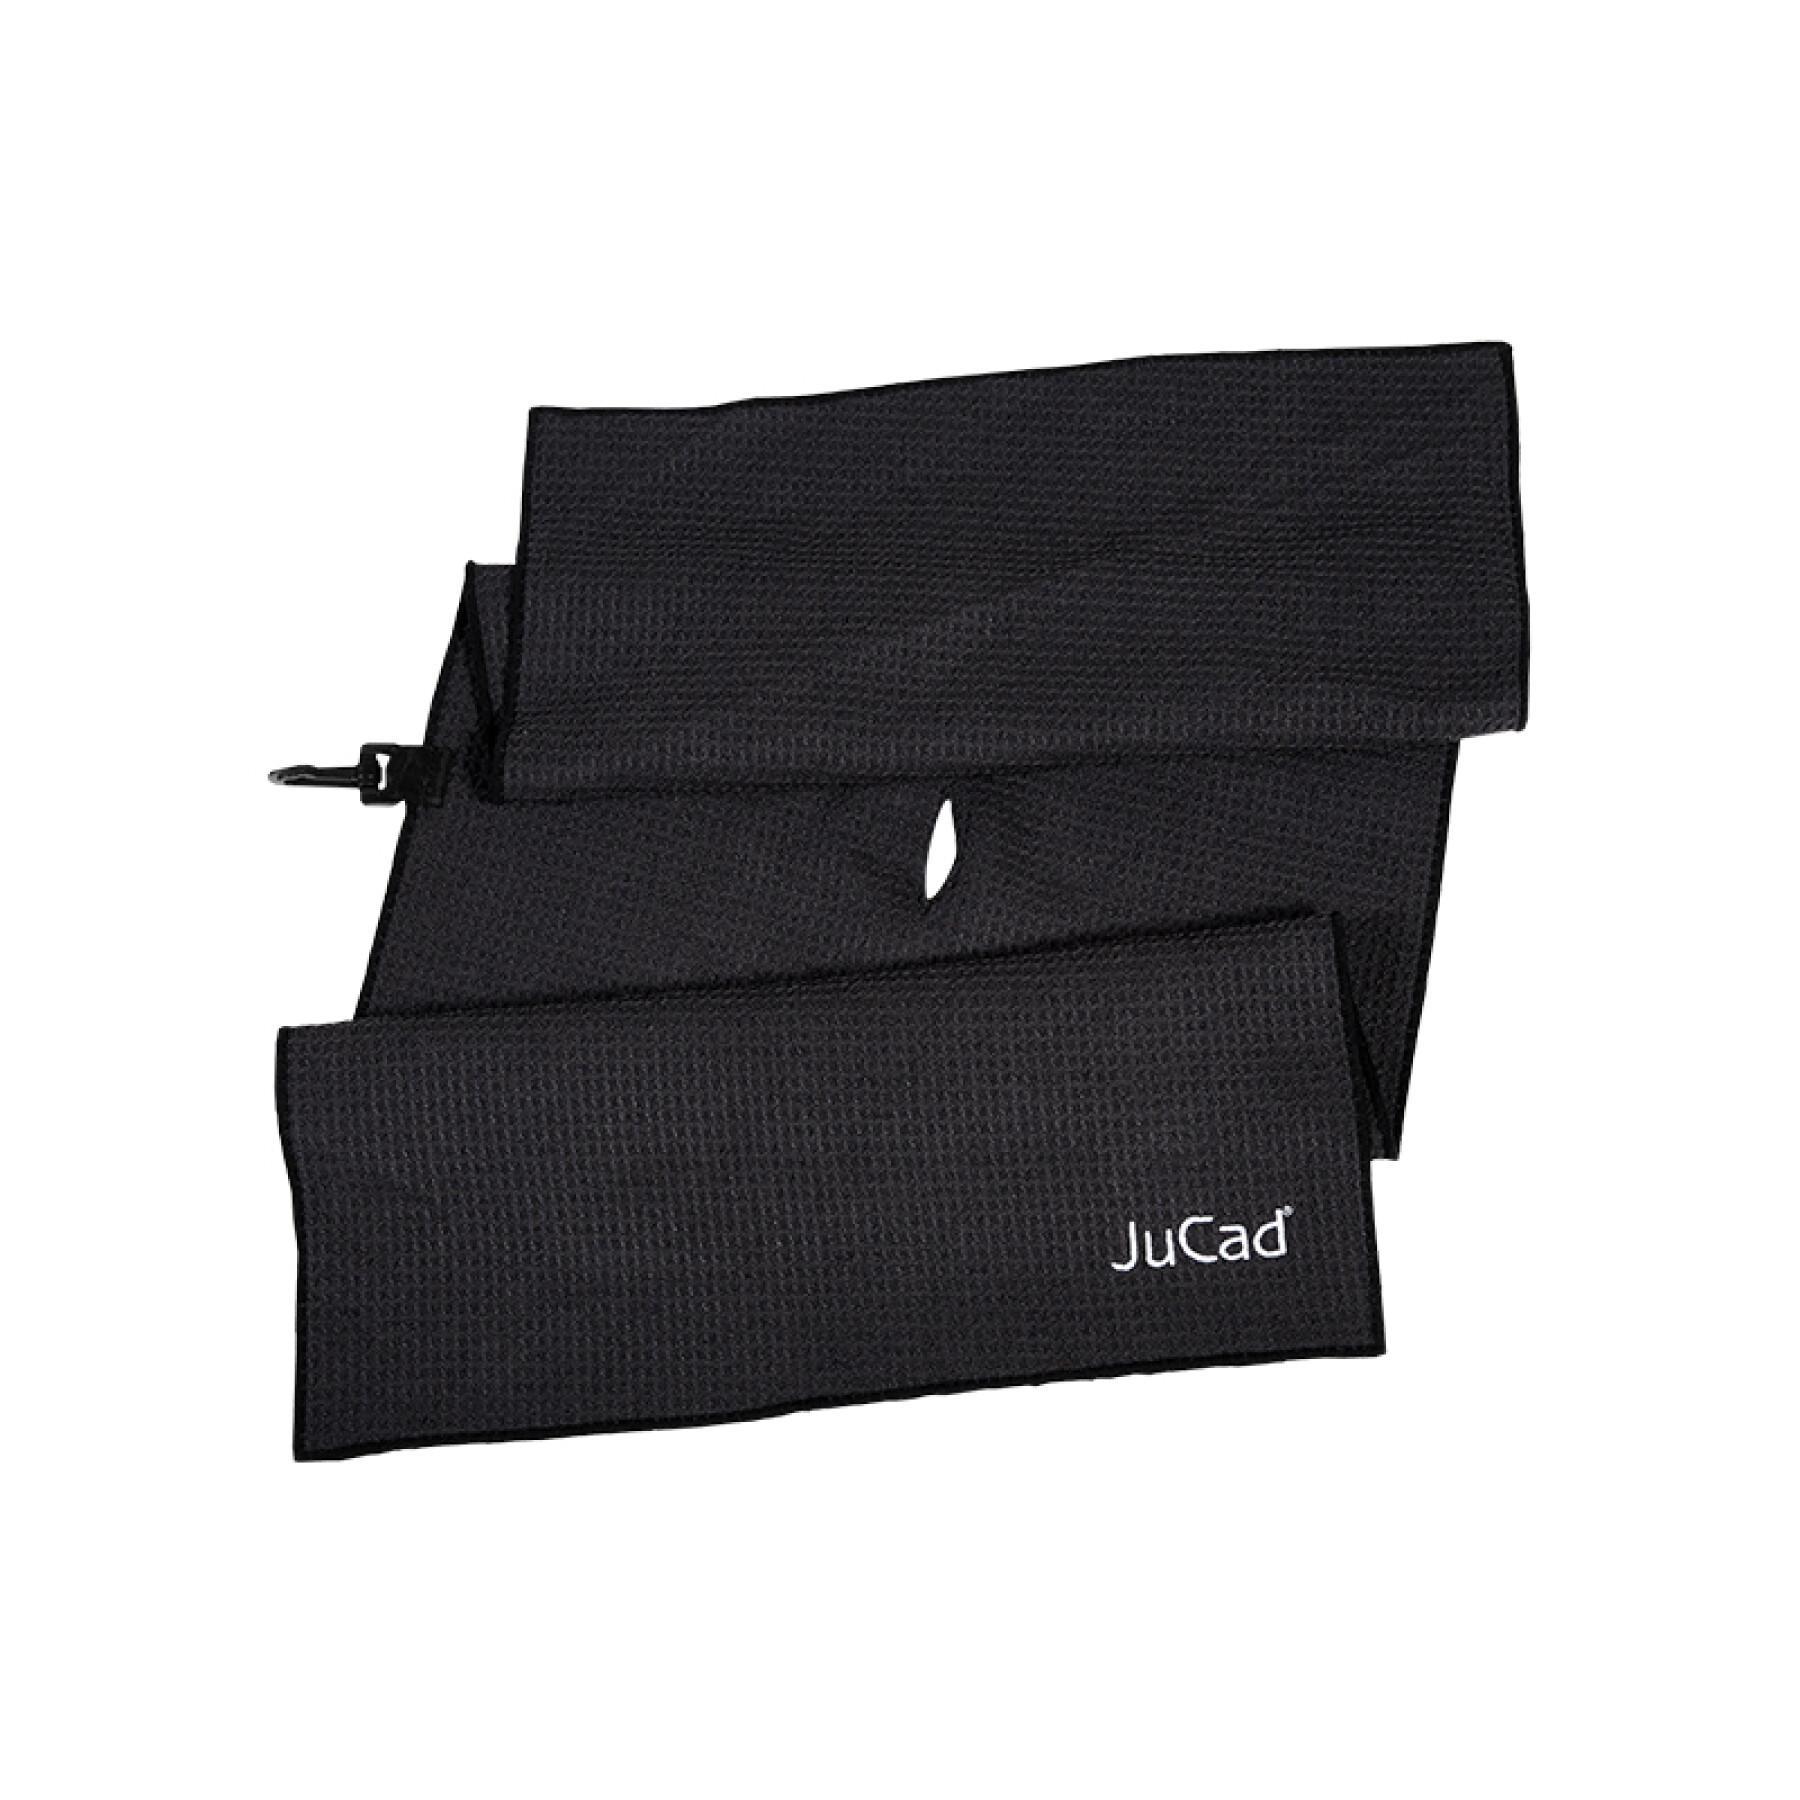 Golf towel xl JuCad